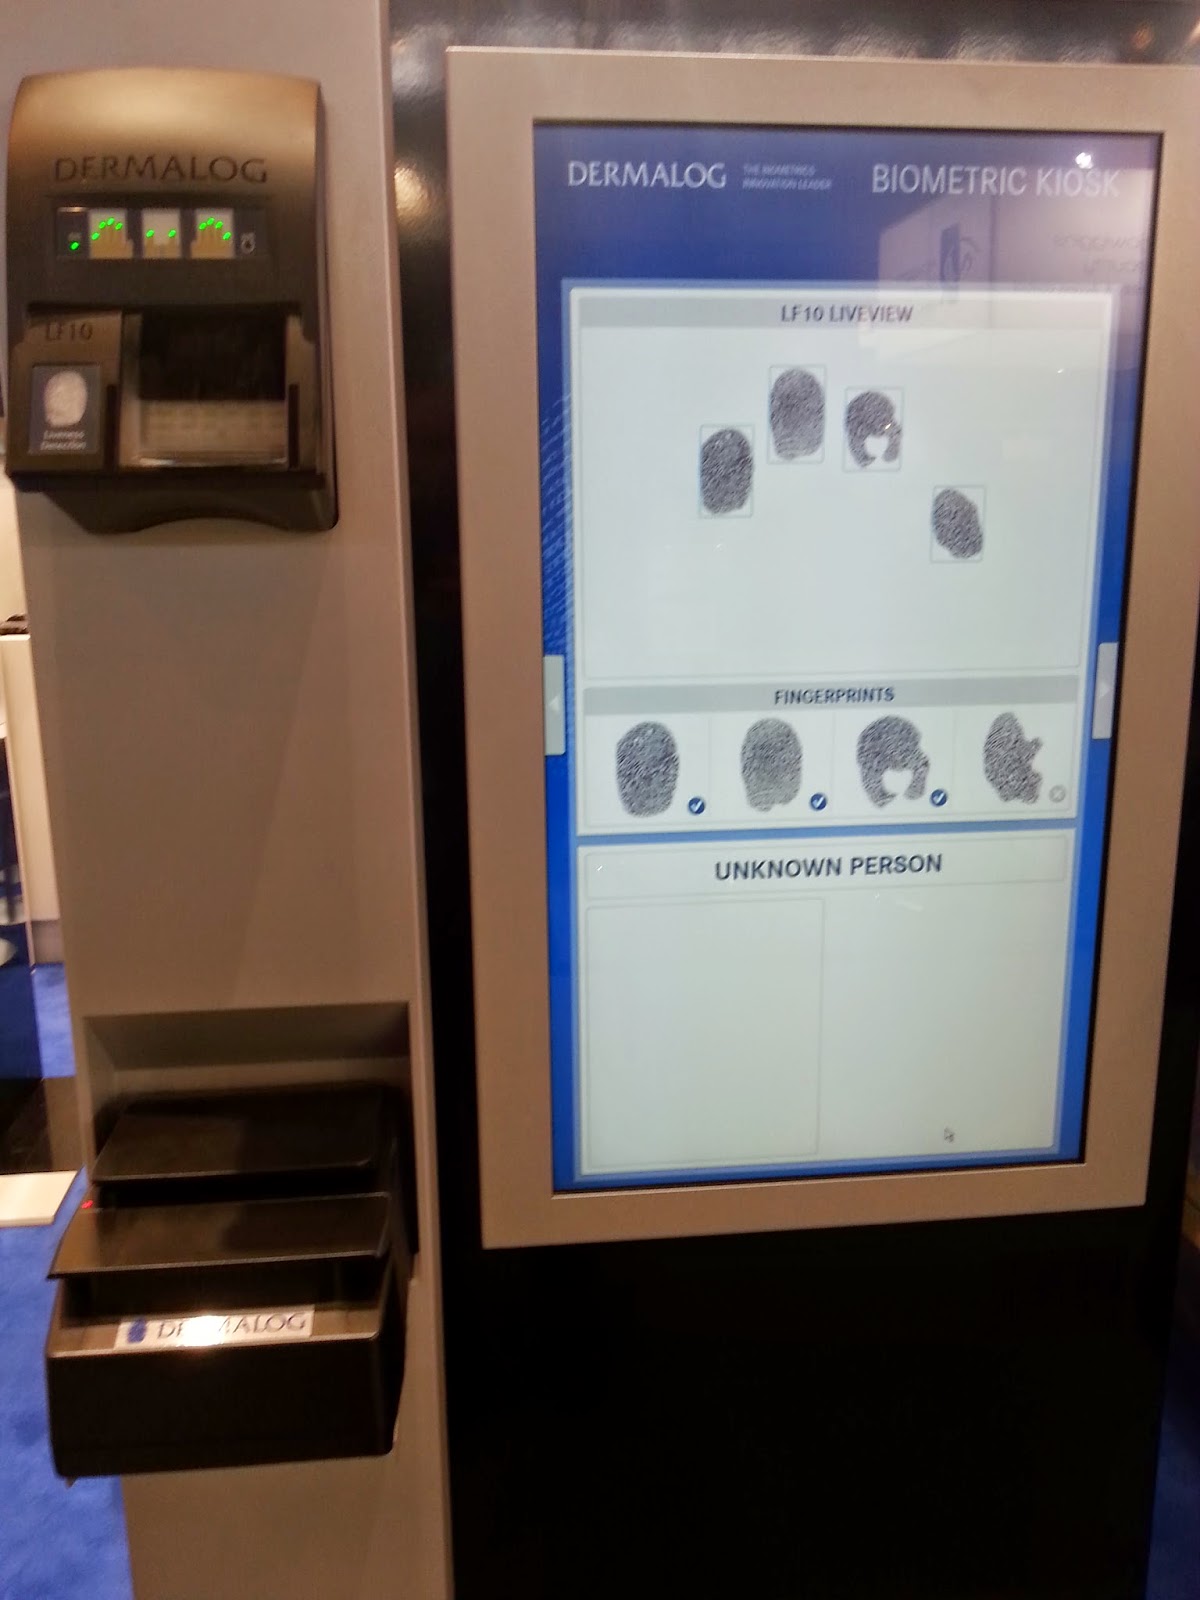 Cajero automático (ATM) con lector biométrico de huellas dactilares